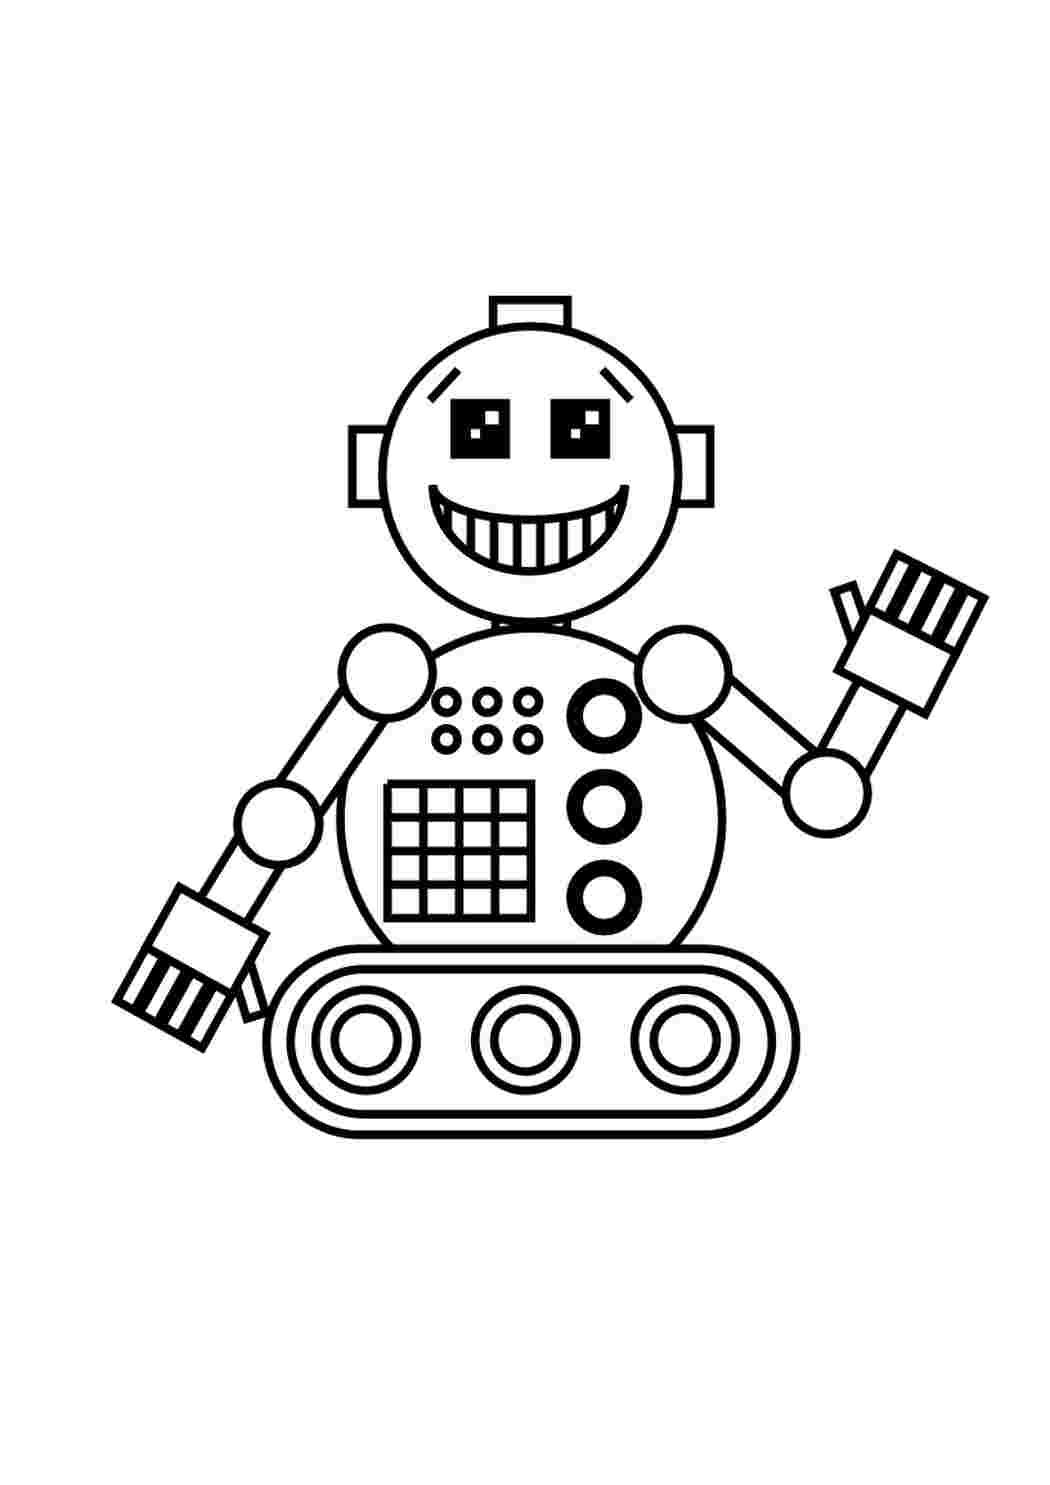 Раскраски картинки на рабочий стол онлайн Робот машет рукой Раскраски для детей мальчиков